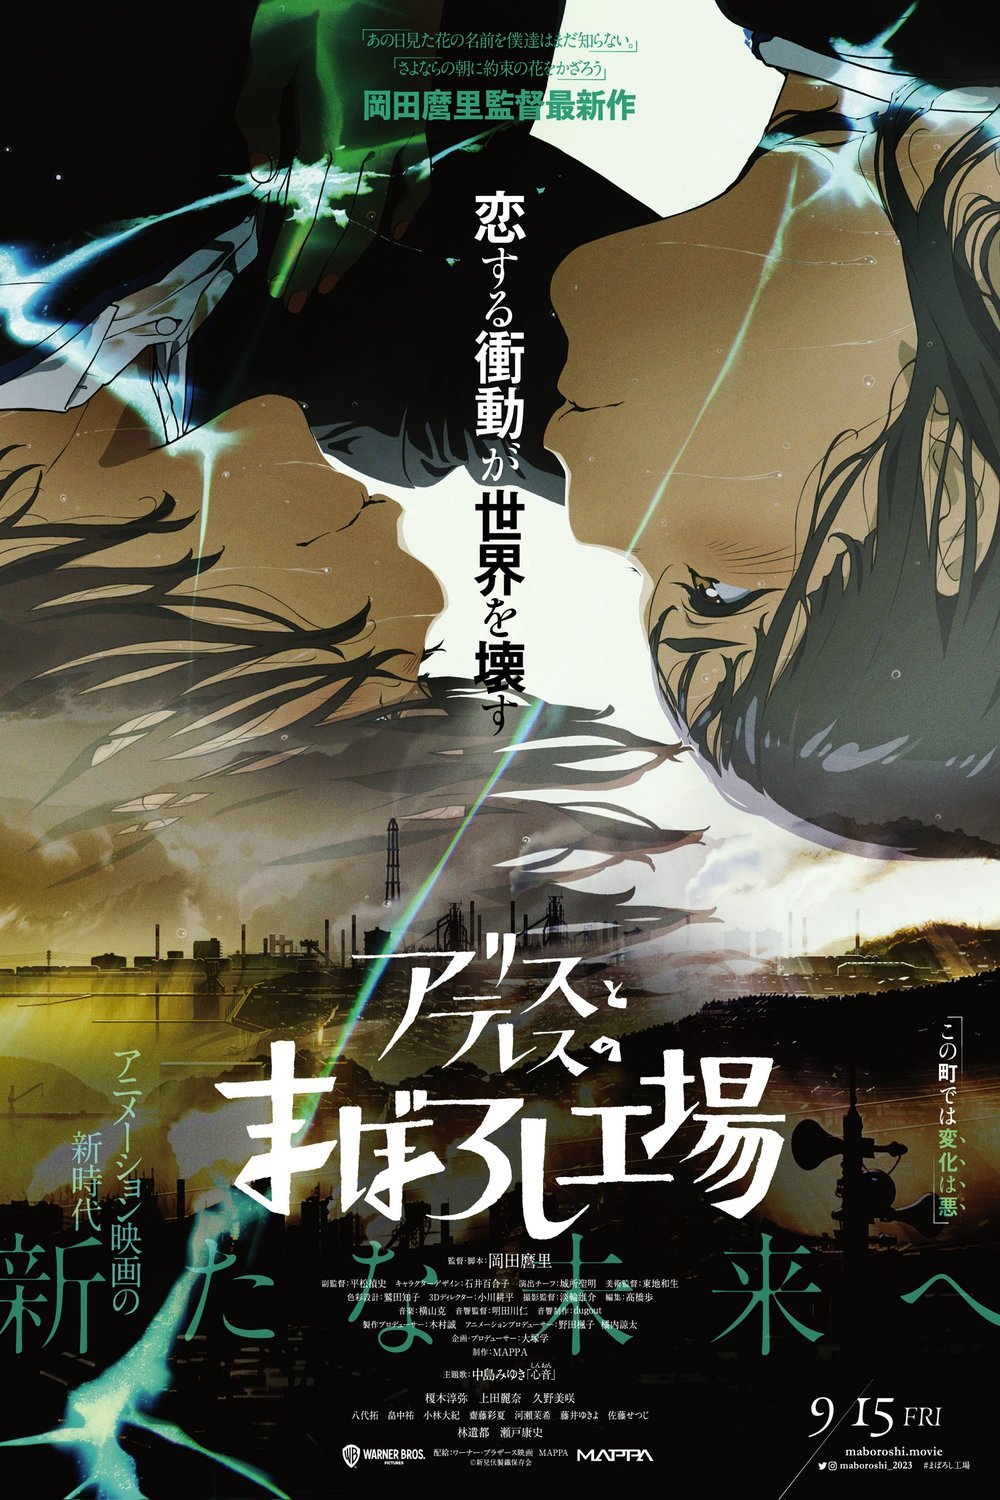 L'affiche originale du film Maboroshi en japonais